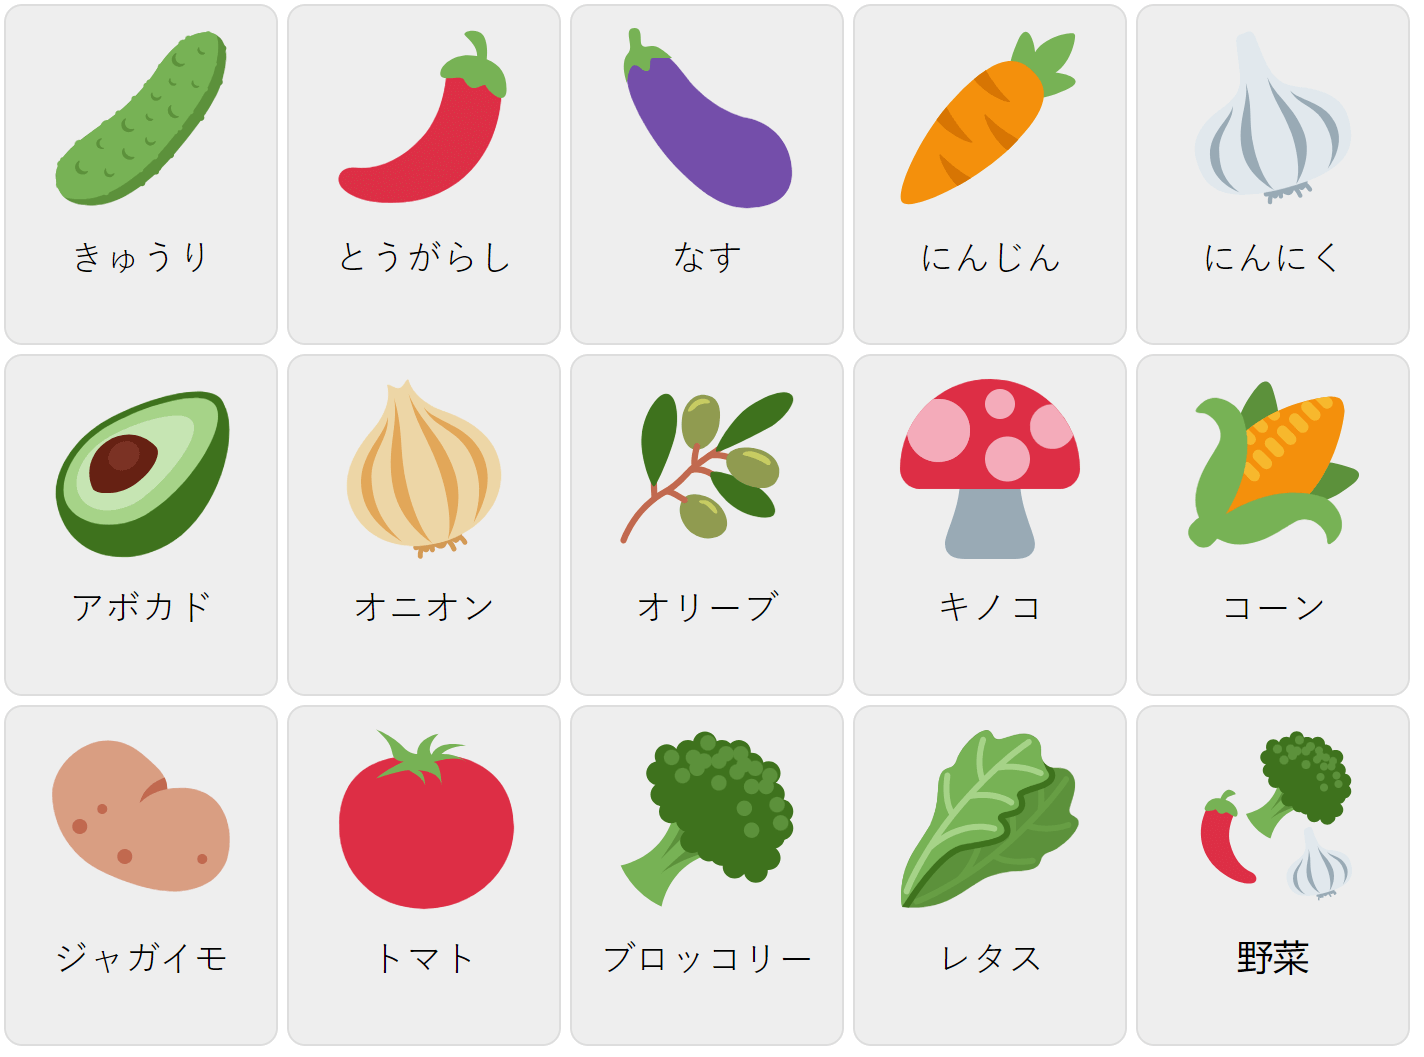 Grönsaker på japanska